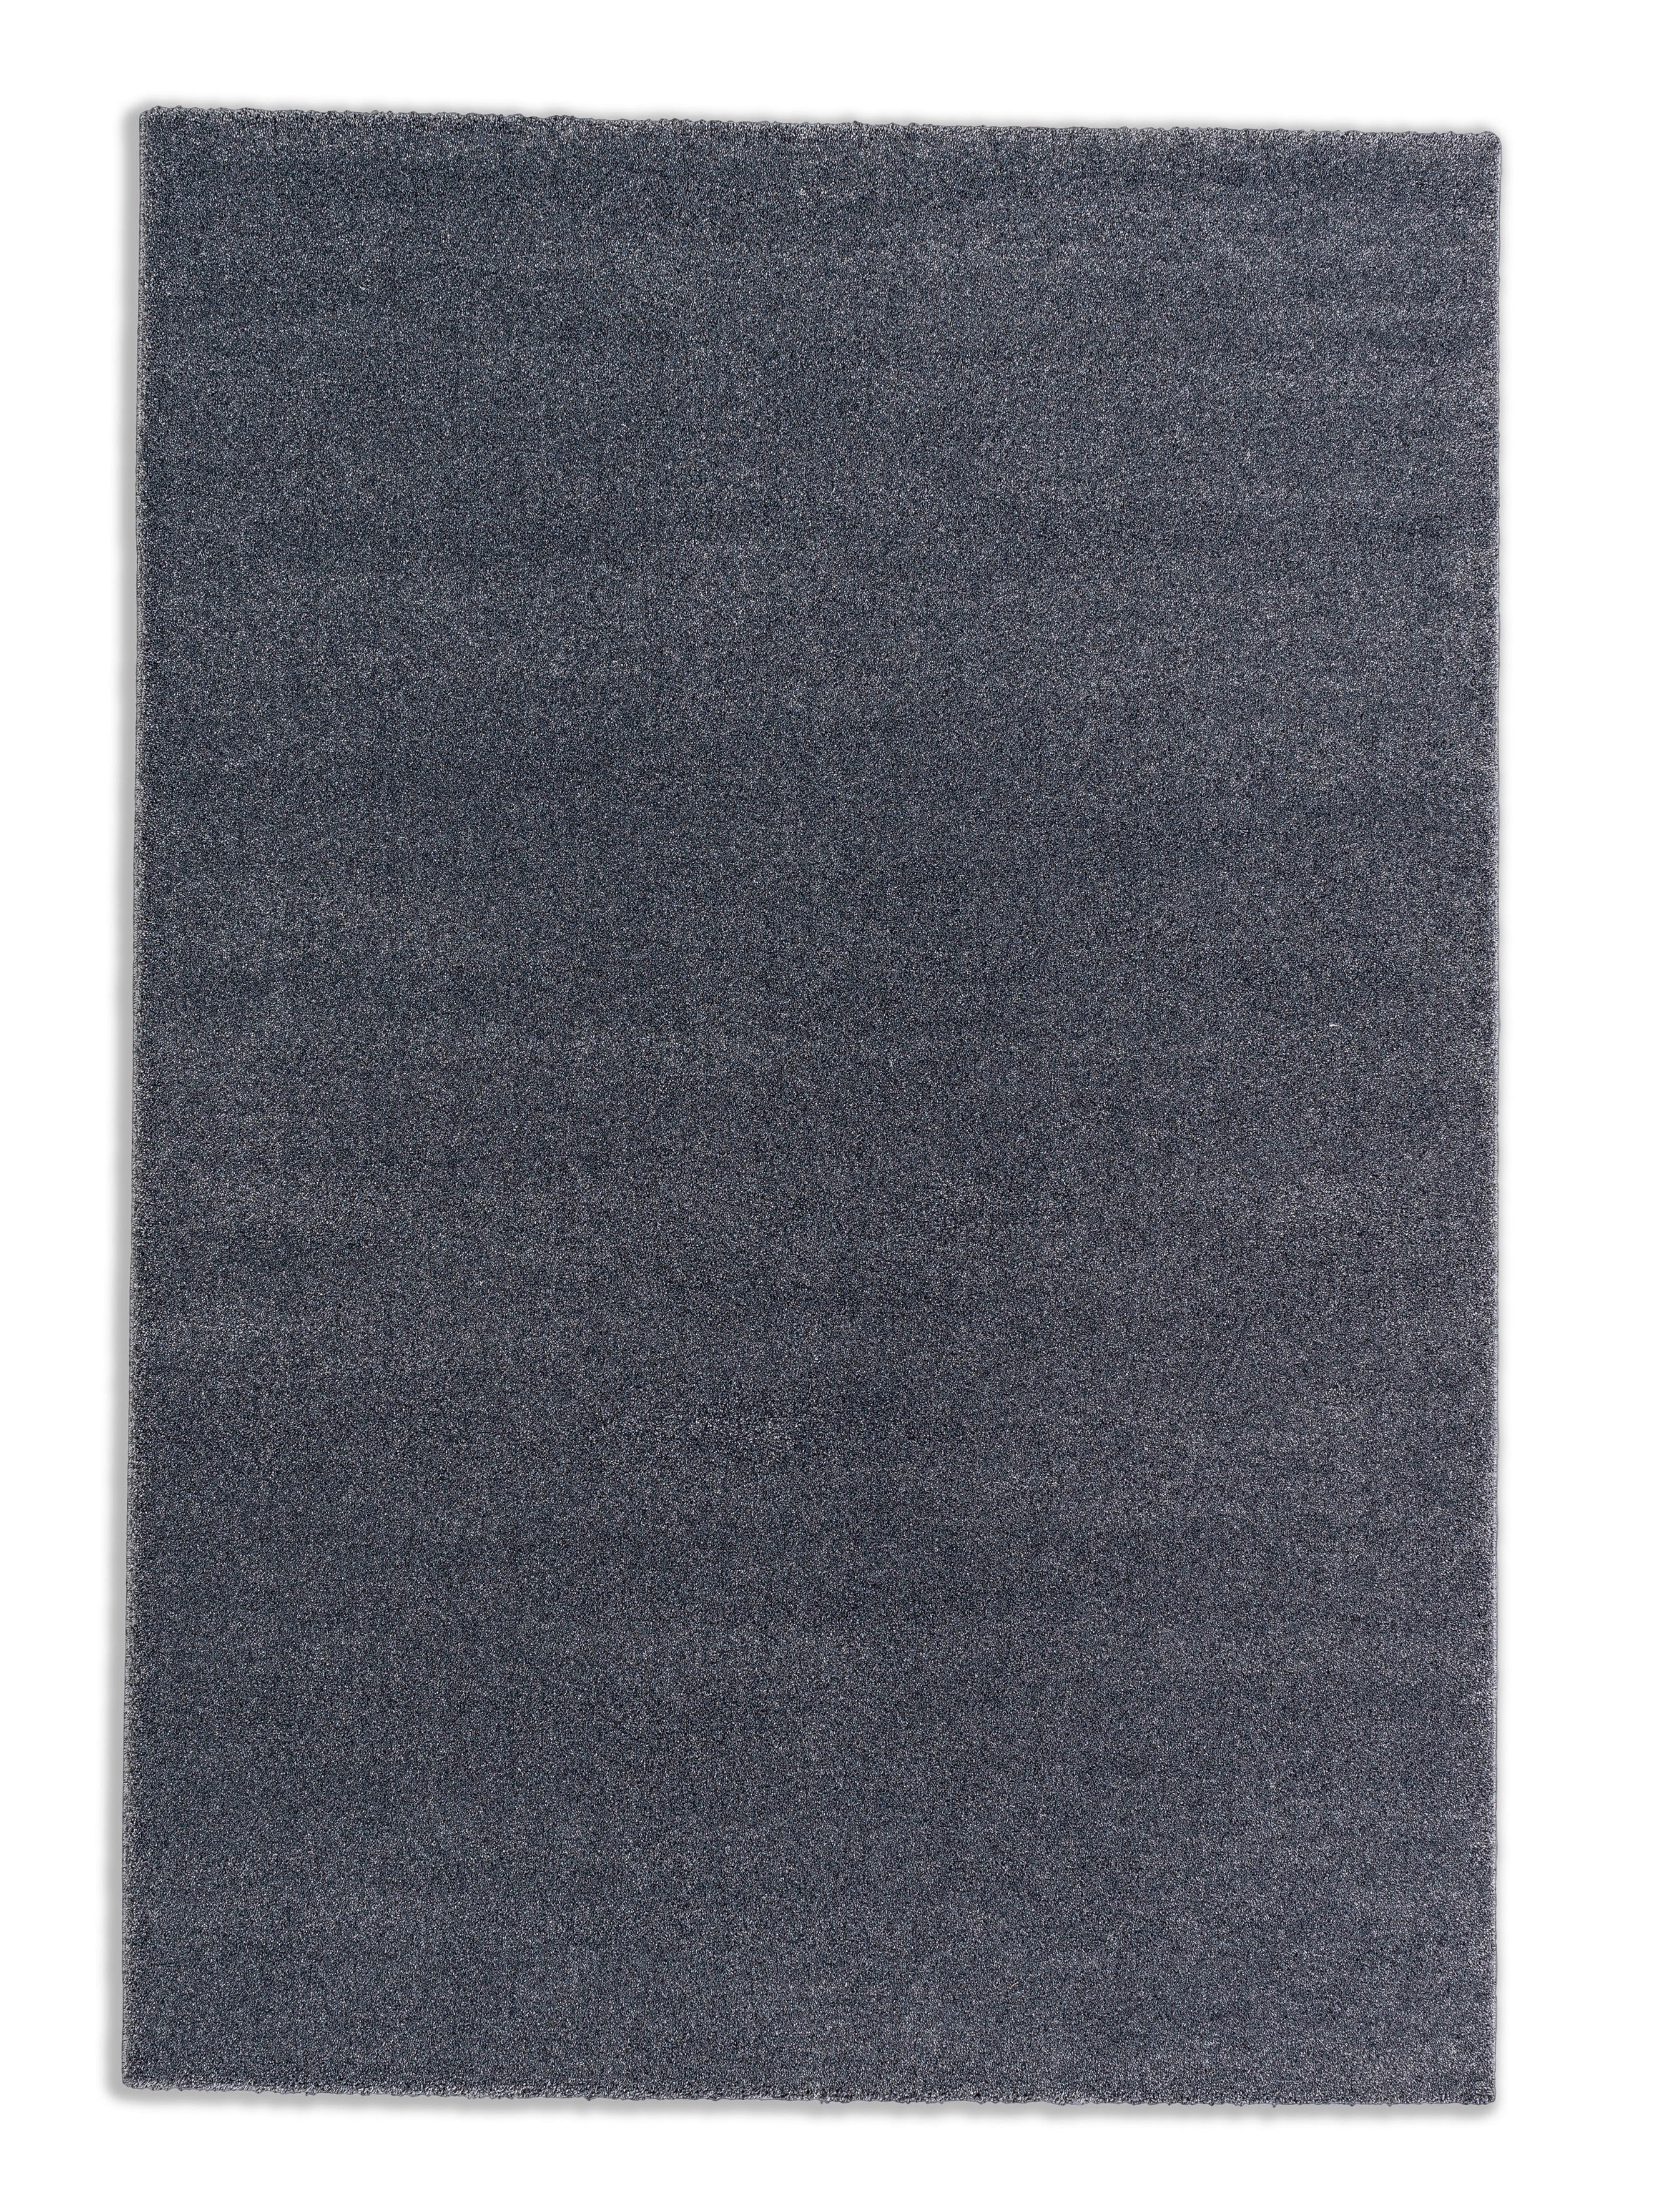 HOCHFLORTEPPICH  67/130 cm  gewebt  Anthrazit   - Anthrazit, Basics, Textil (67/130cm) - Schöner Wohnen